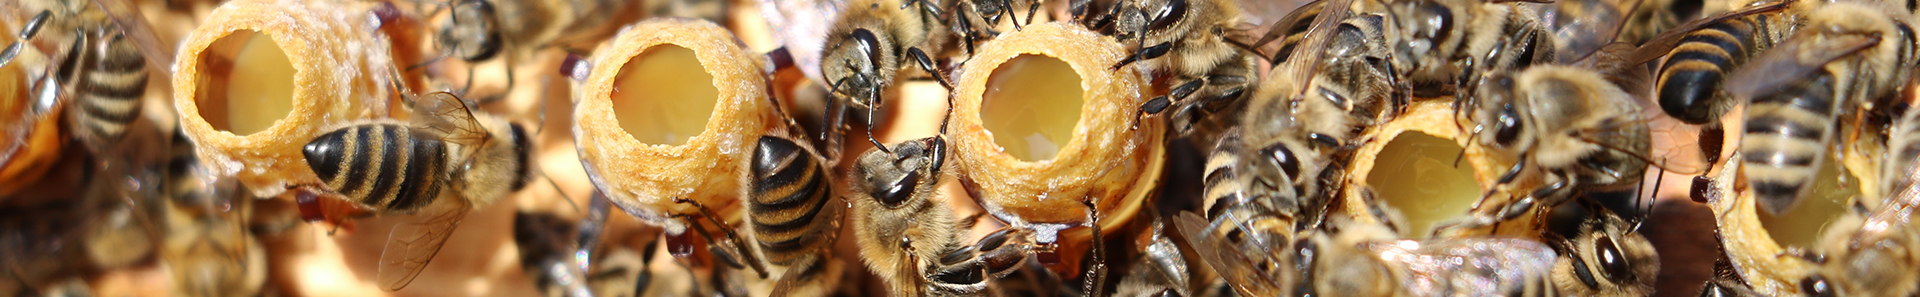 Valódi méhpempő egyenesen a kaptárból